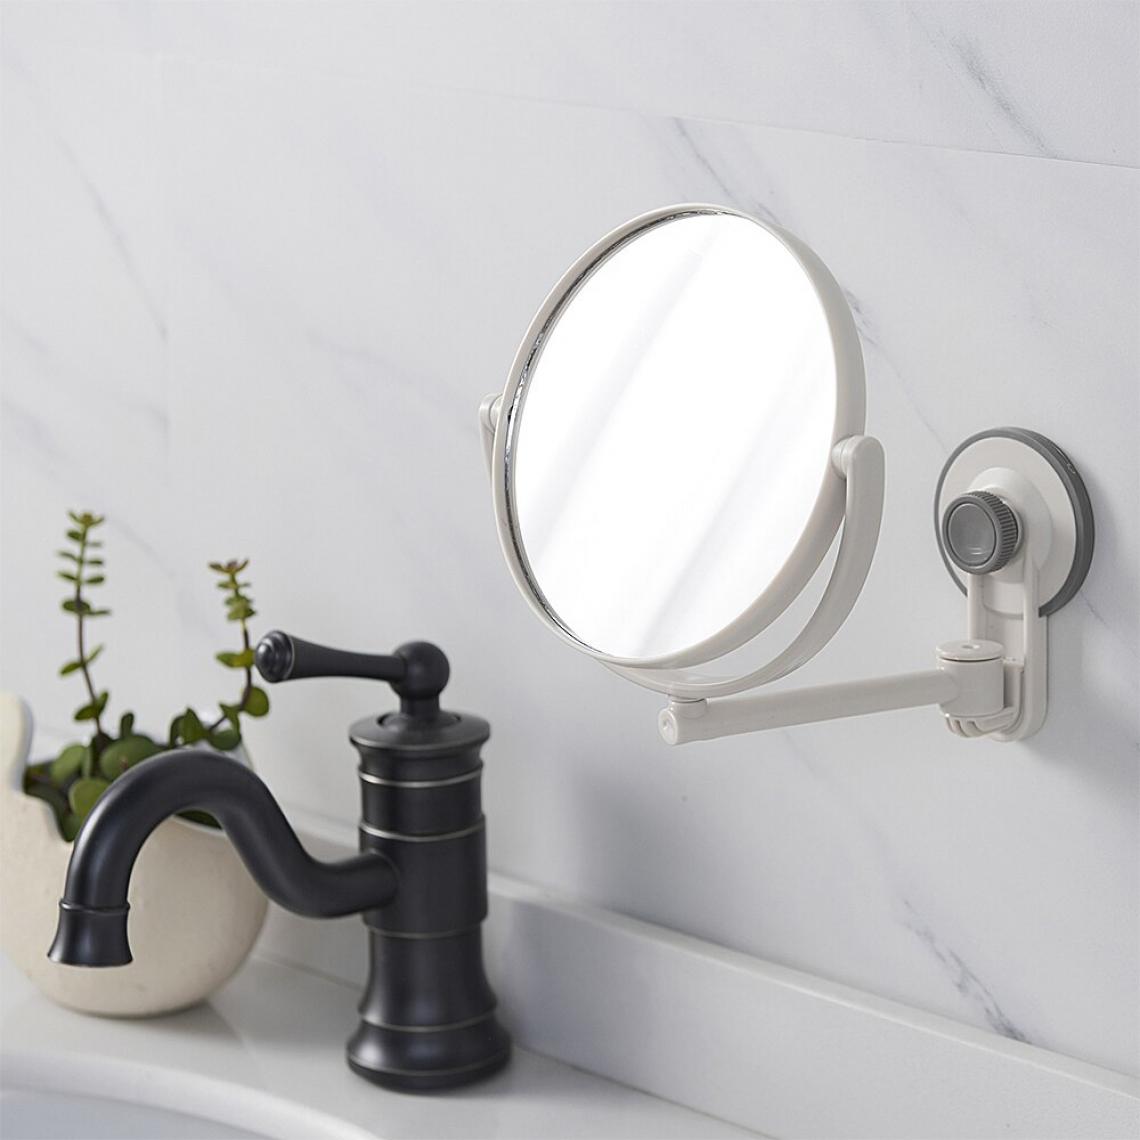 Universal - Miroir de maquillage mural double face miroir de salle de bain imperméable lisse réglable 360 degrés miroir de maquillage mural(Beige) - Miroir de salle de bain